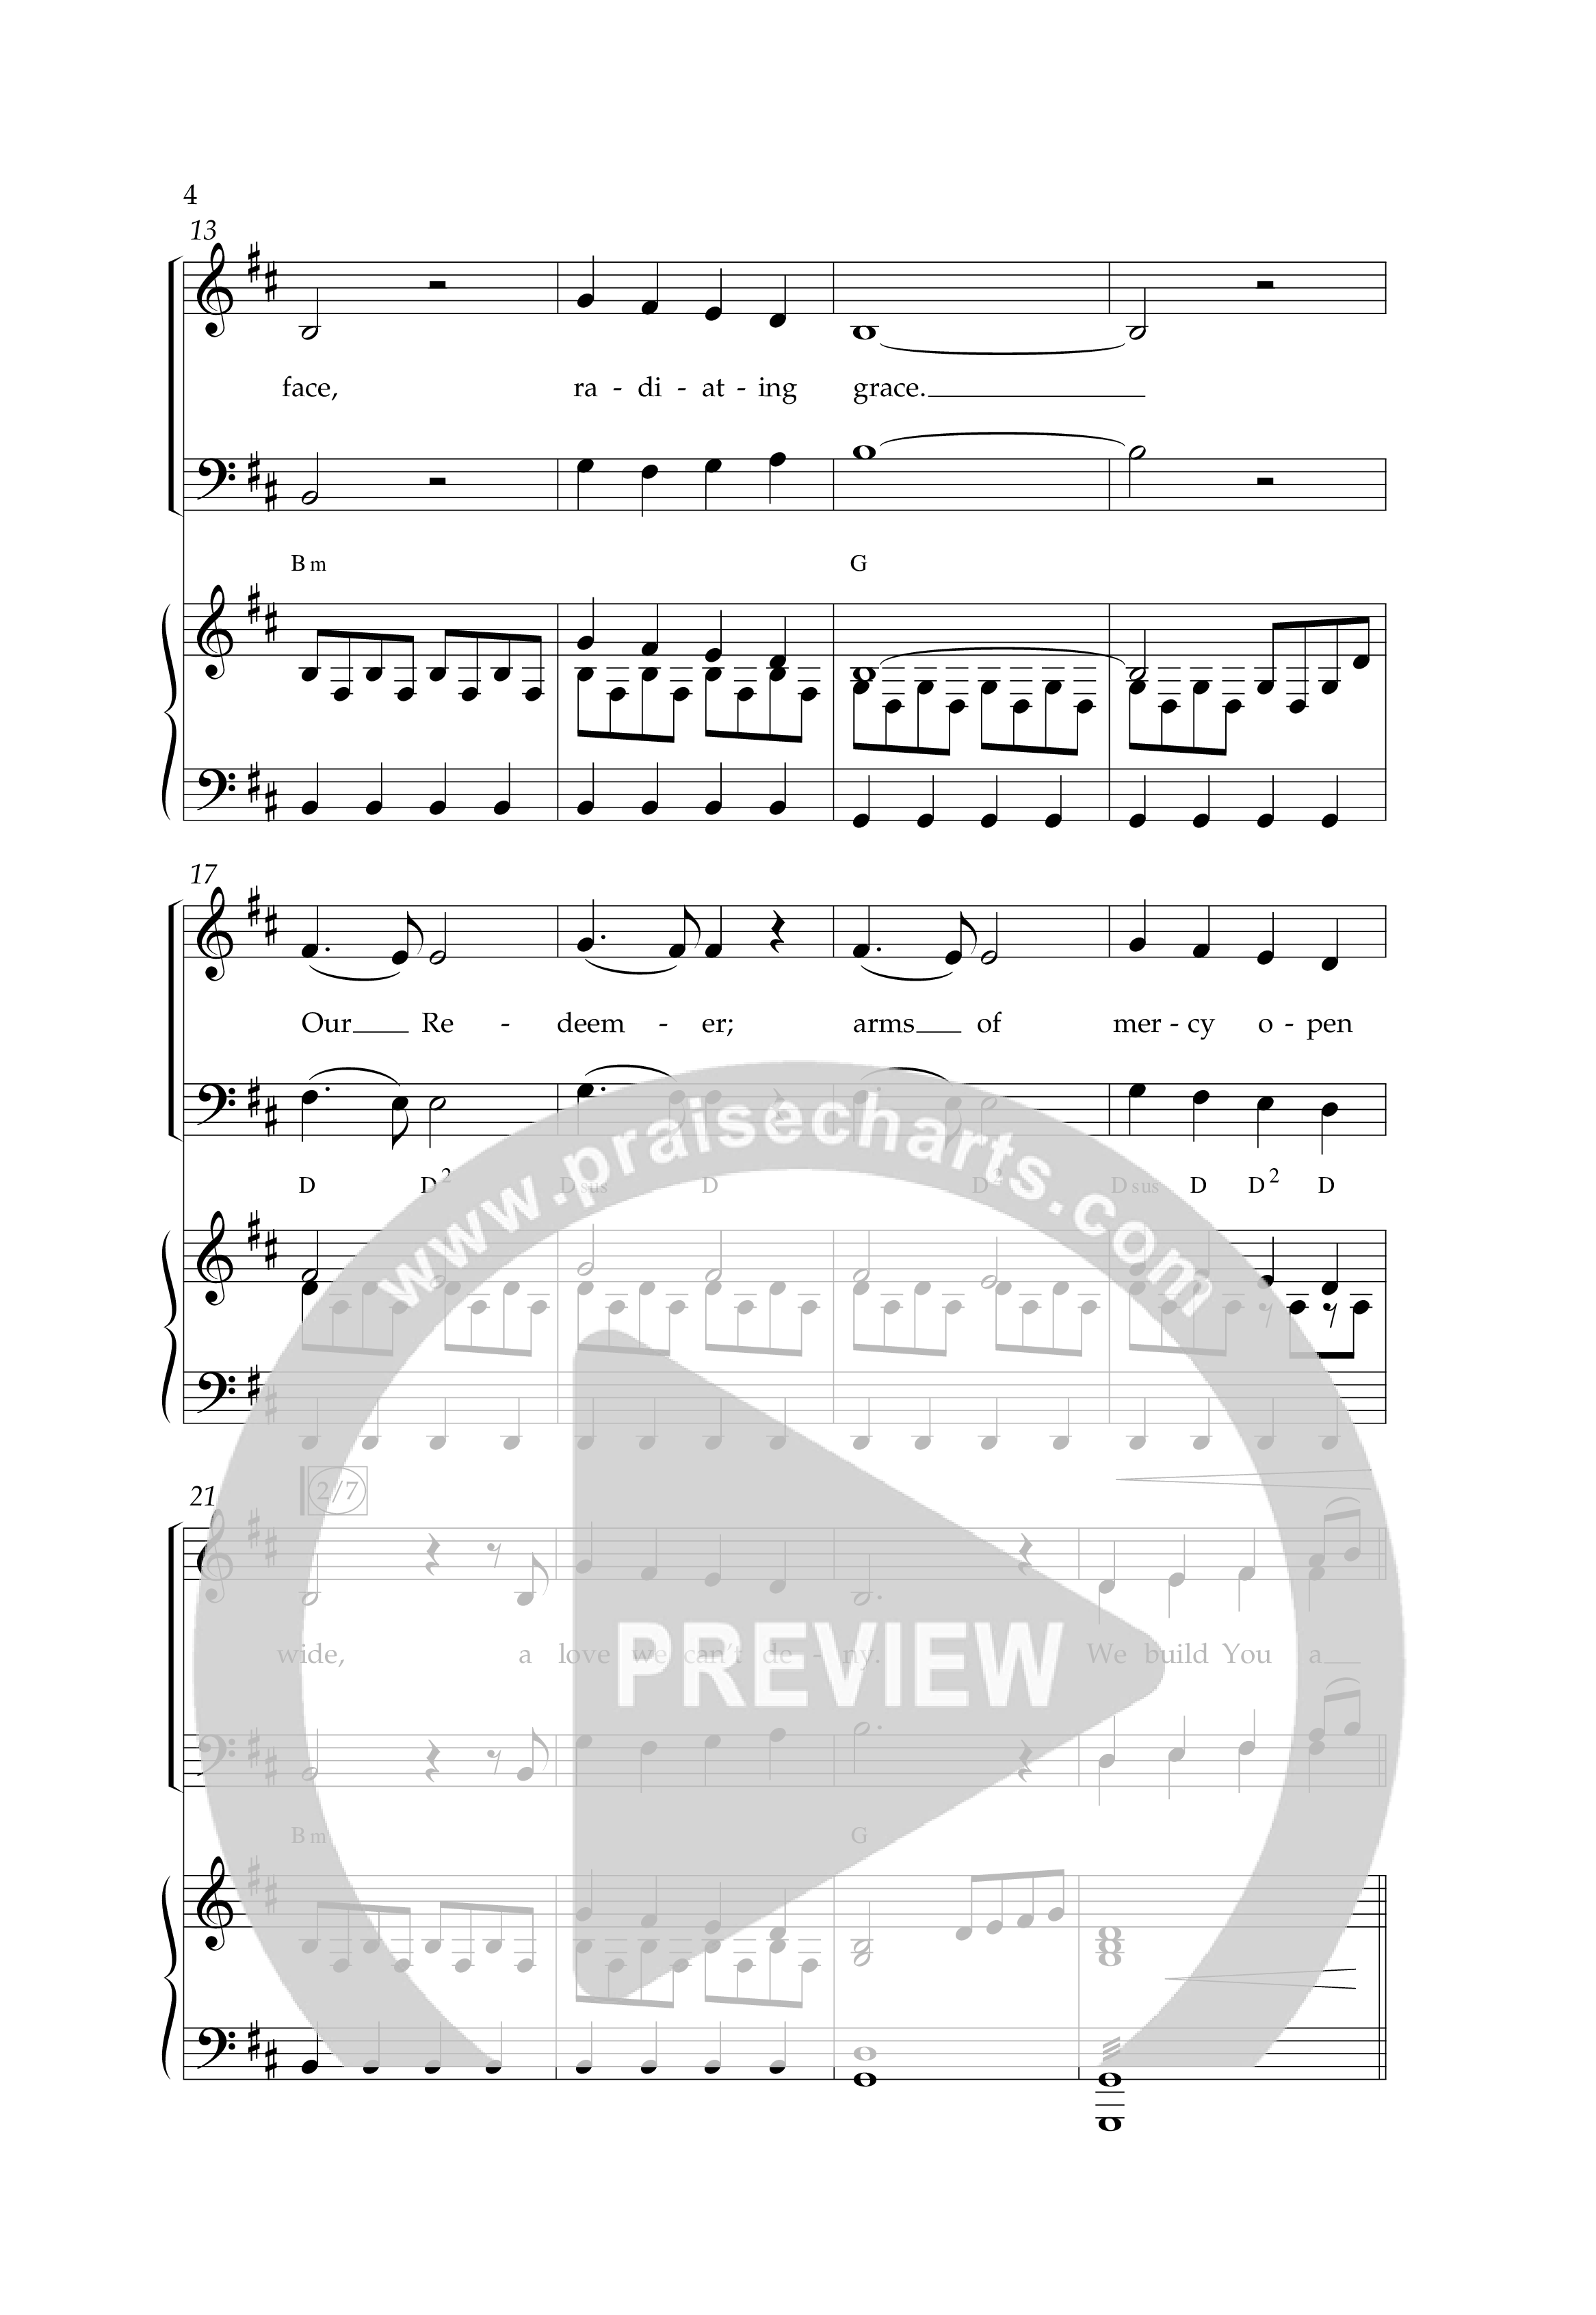 Throne Of Praise (Choral Anthem SATB) Anthem (SATB/Piano) (Lifeway Choral / Arr. J. Daniel Smith)